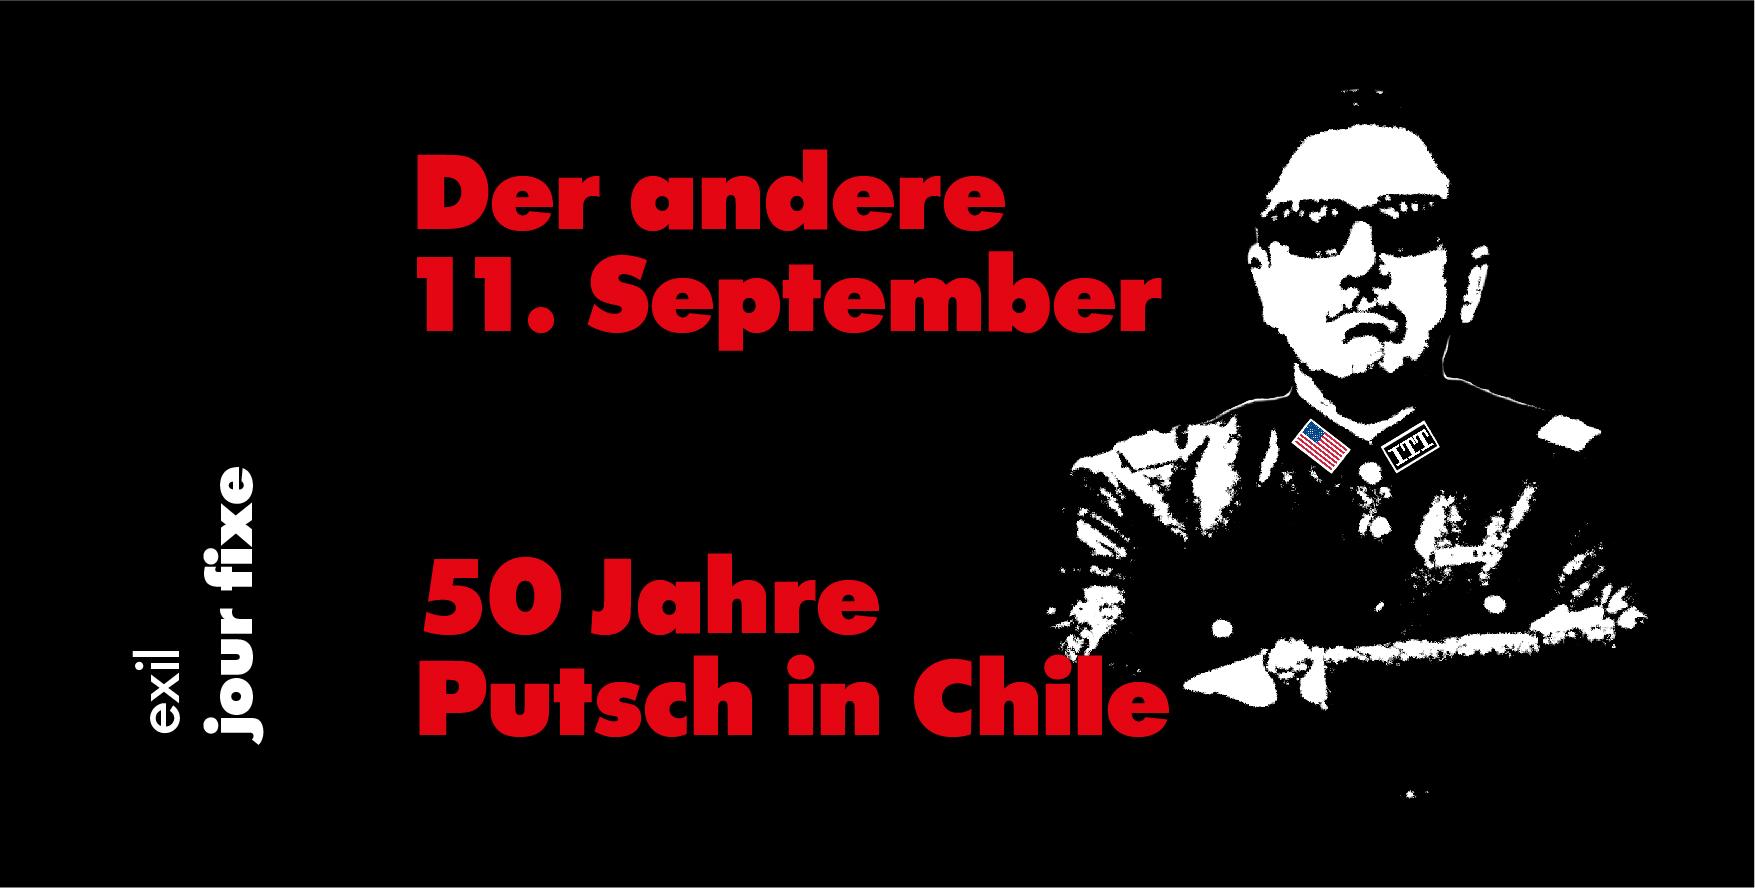 Der andere 11. September – 50 Jahre Putsch in Chile